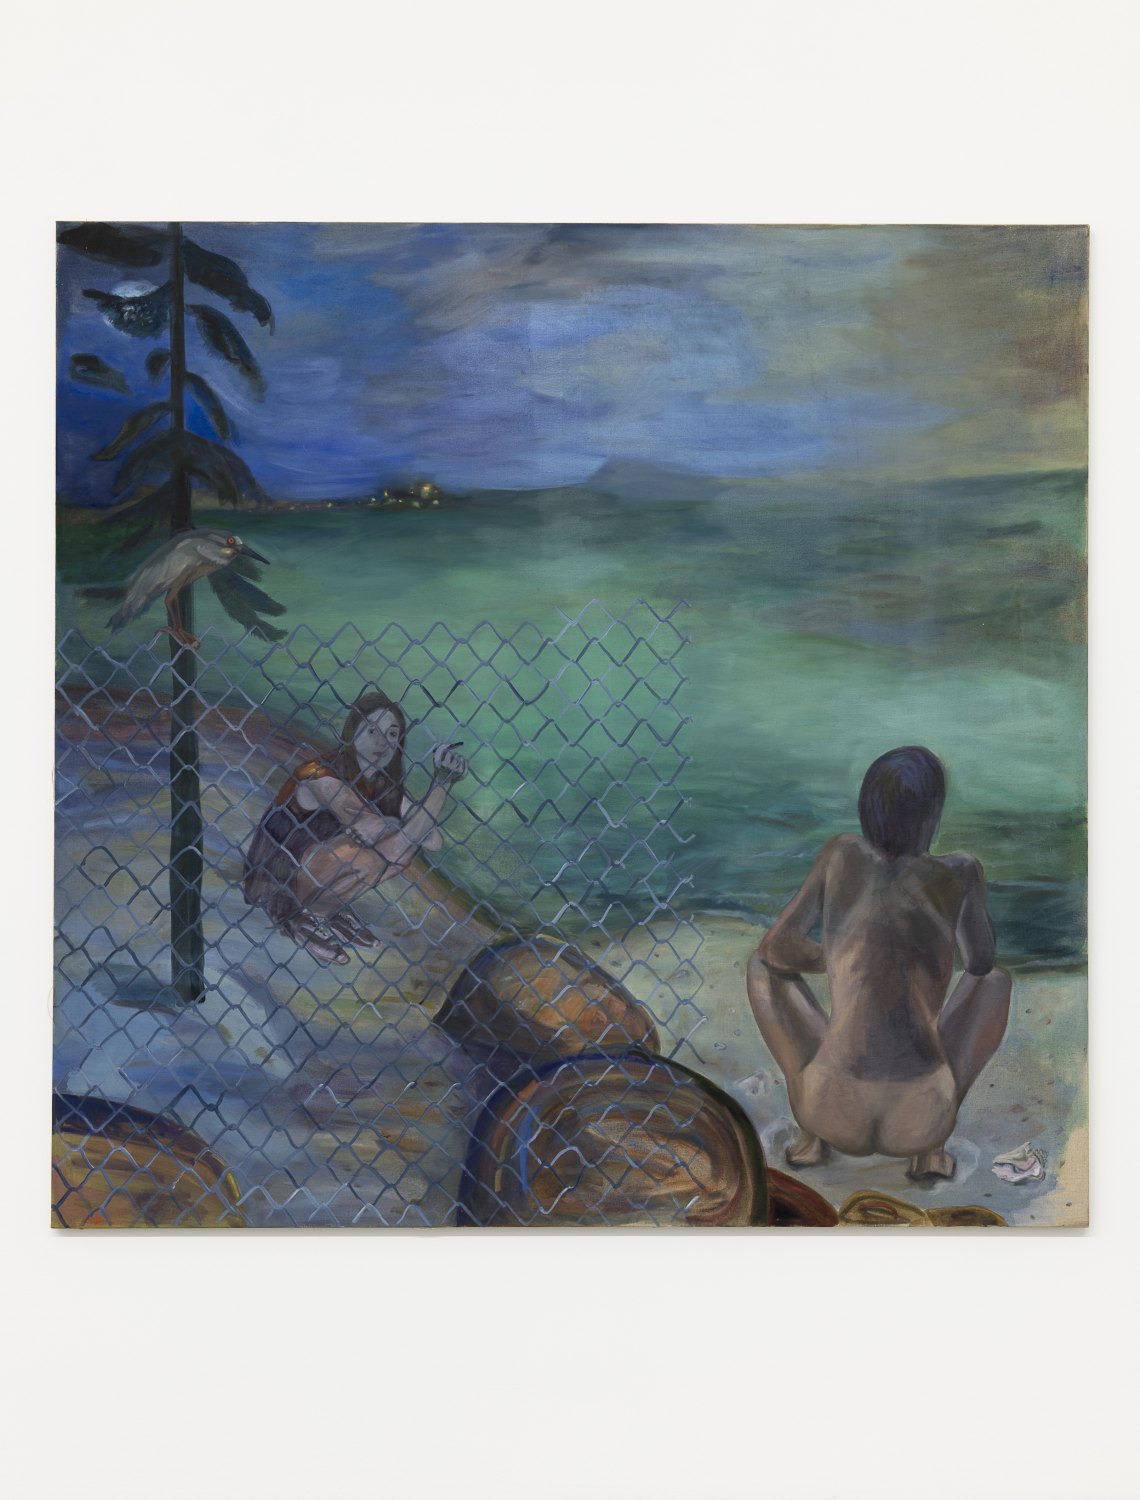 Jill Mulleady Point Lobos, 2018 Oil on linen, 168 x 173 cm